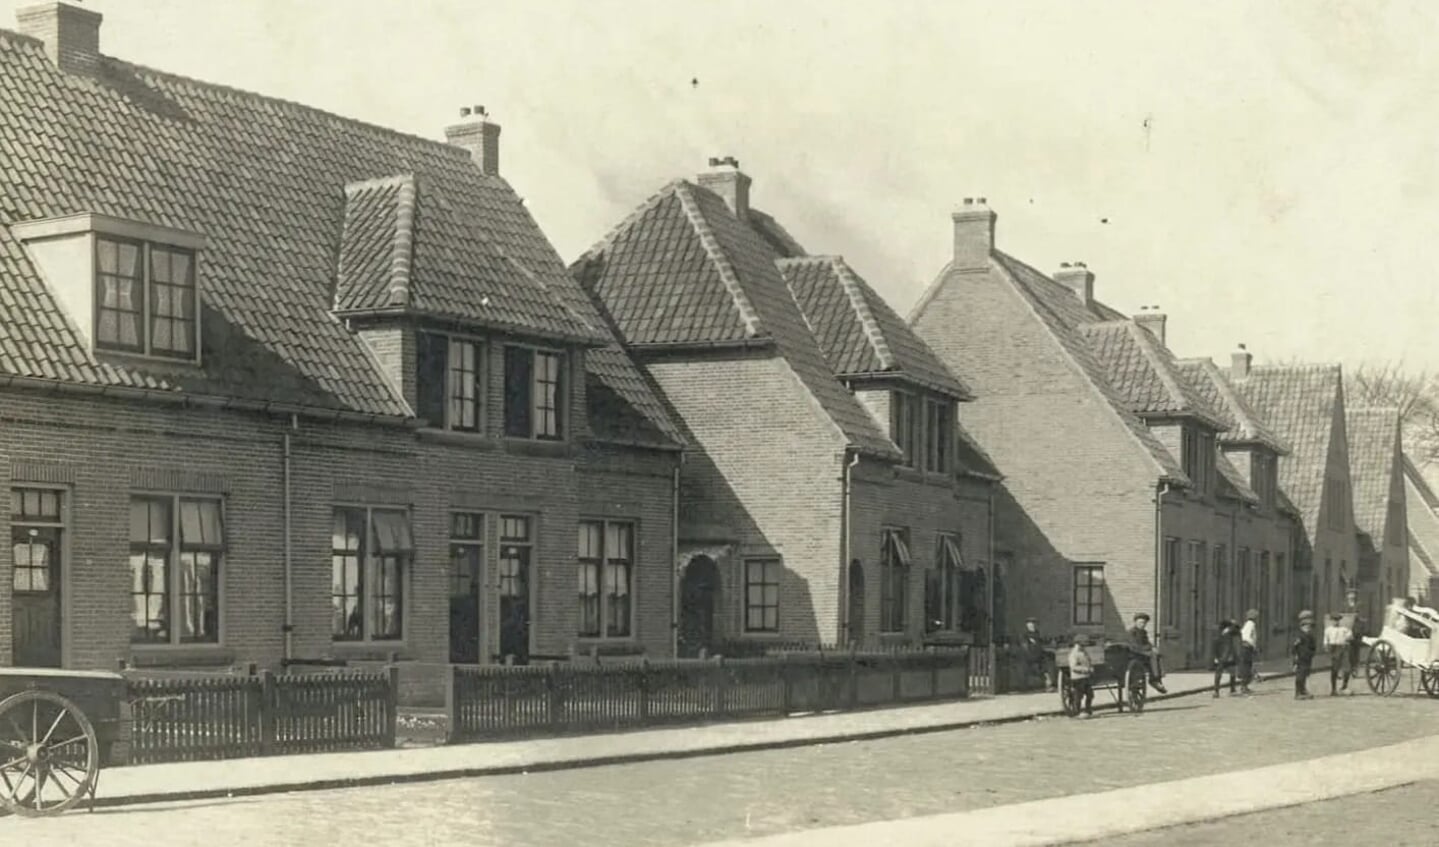 In 1916 kocht de gemeente aan de zuidkant van de stad grote kavels grond van particulieren voor de bouw van 433 arbeiderswoningen. 